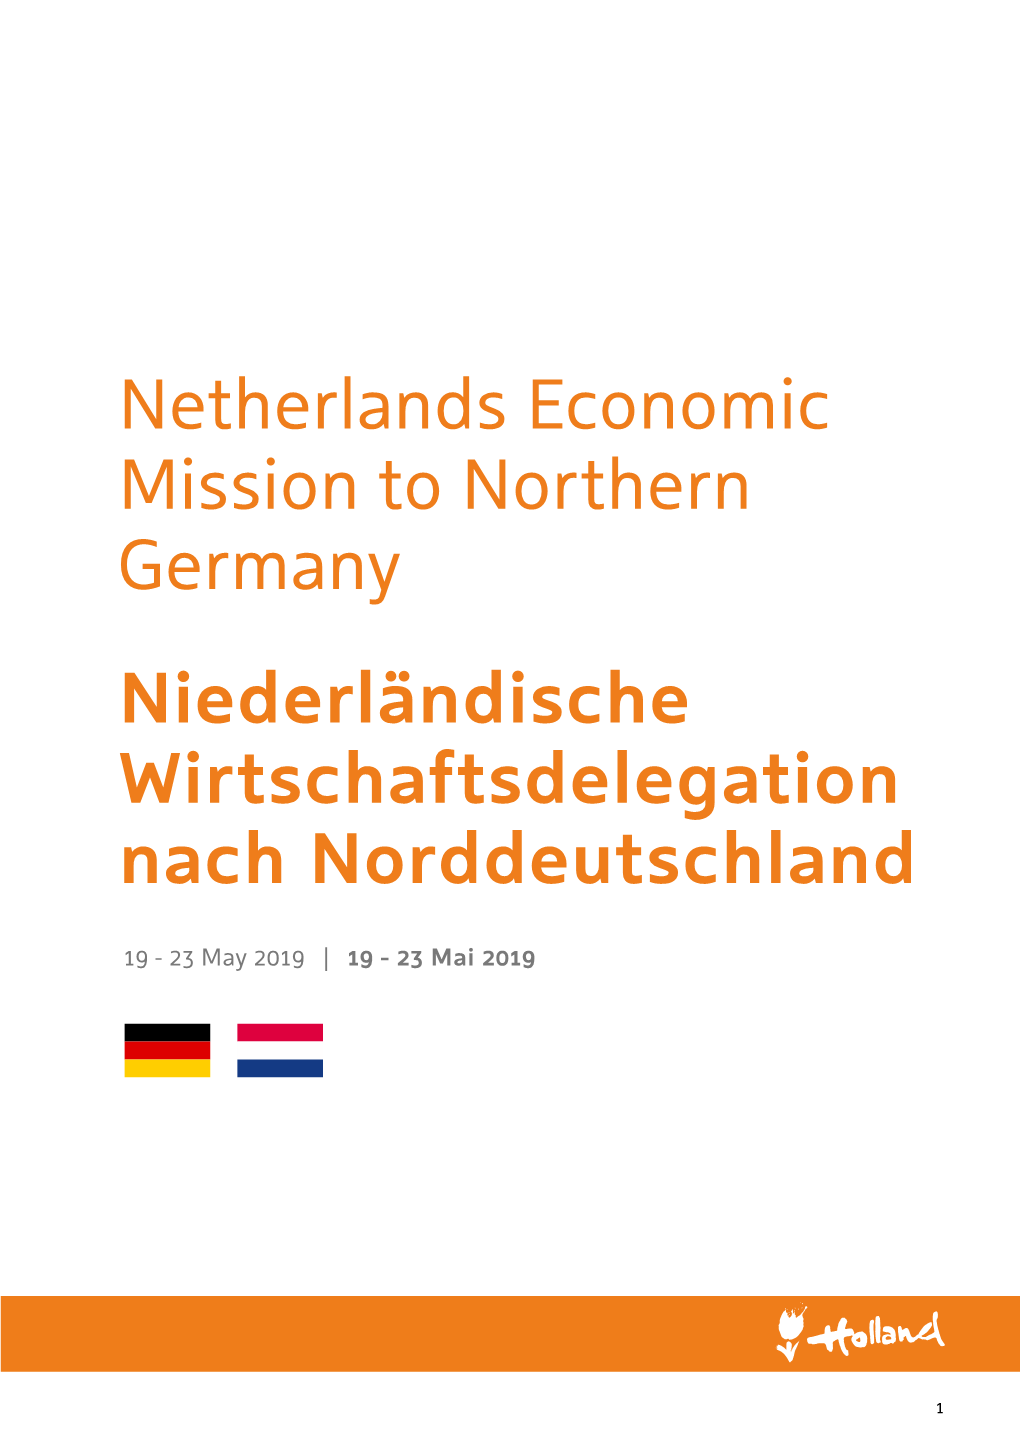 Netherlands Economic Mission to Northern Germany Niederländische Wirtschaftsdelegation Nach Norddeutschland